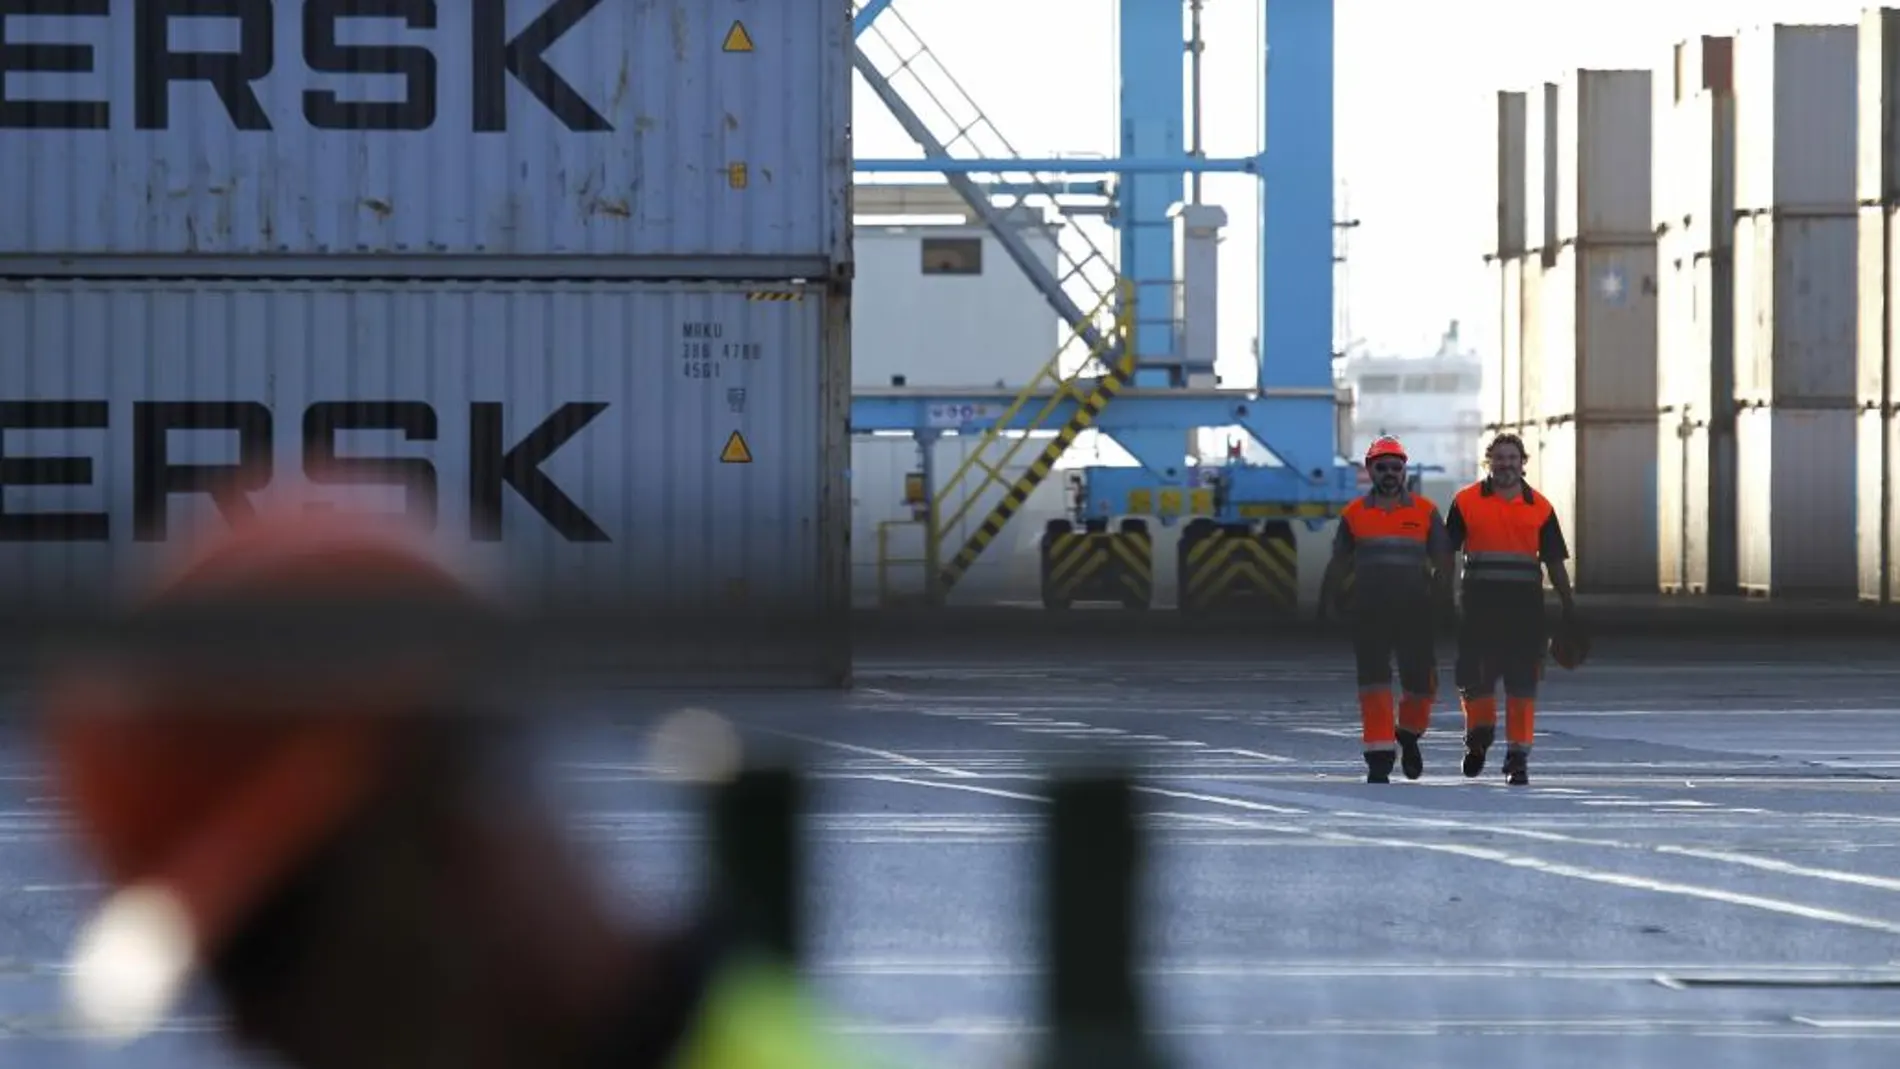 Maersk ha desviado su buque triple E Madrid, uno de los portacontenedores más grandes del mundo, del puerto de Algeciras al de Tánger en su viaje inaugural